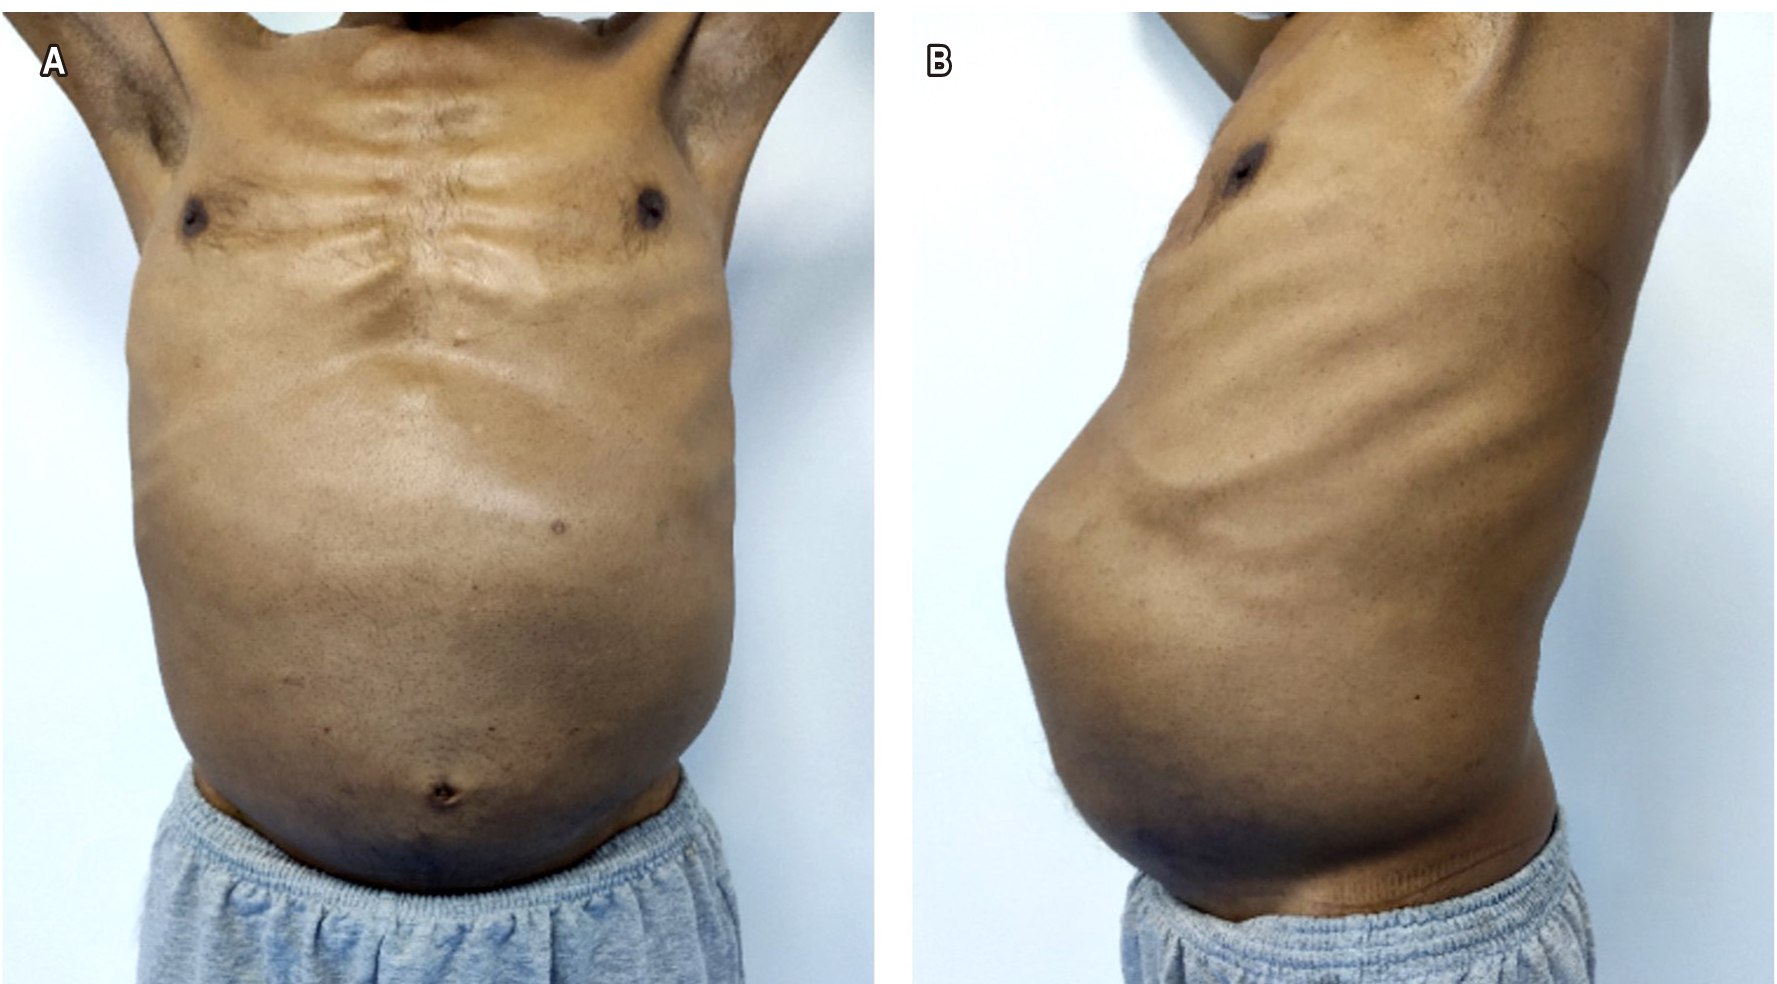 Figura 1. A. Se observa al paciente con distensión abdominal. B. Se observa el abdomen dilatado con presencia de la masa a nivel del epigastrio, mesogastrio e hipocondrio izquierdo.